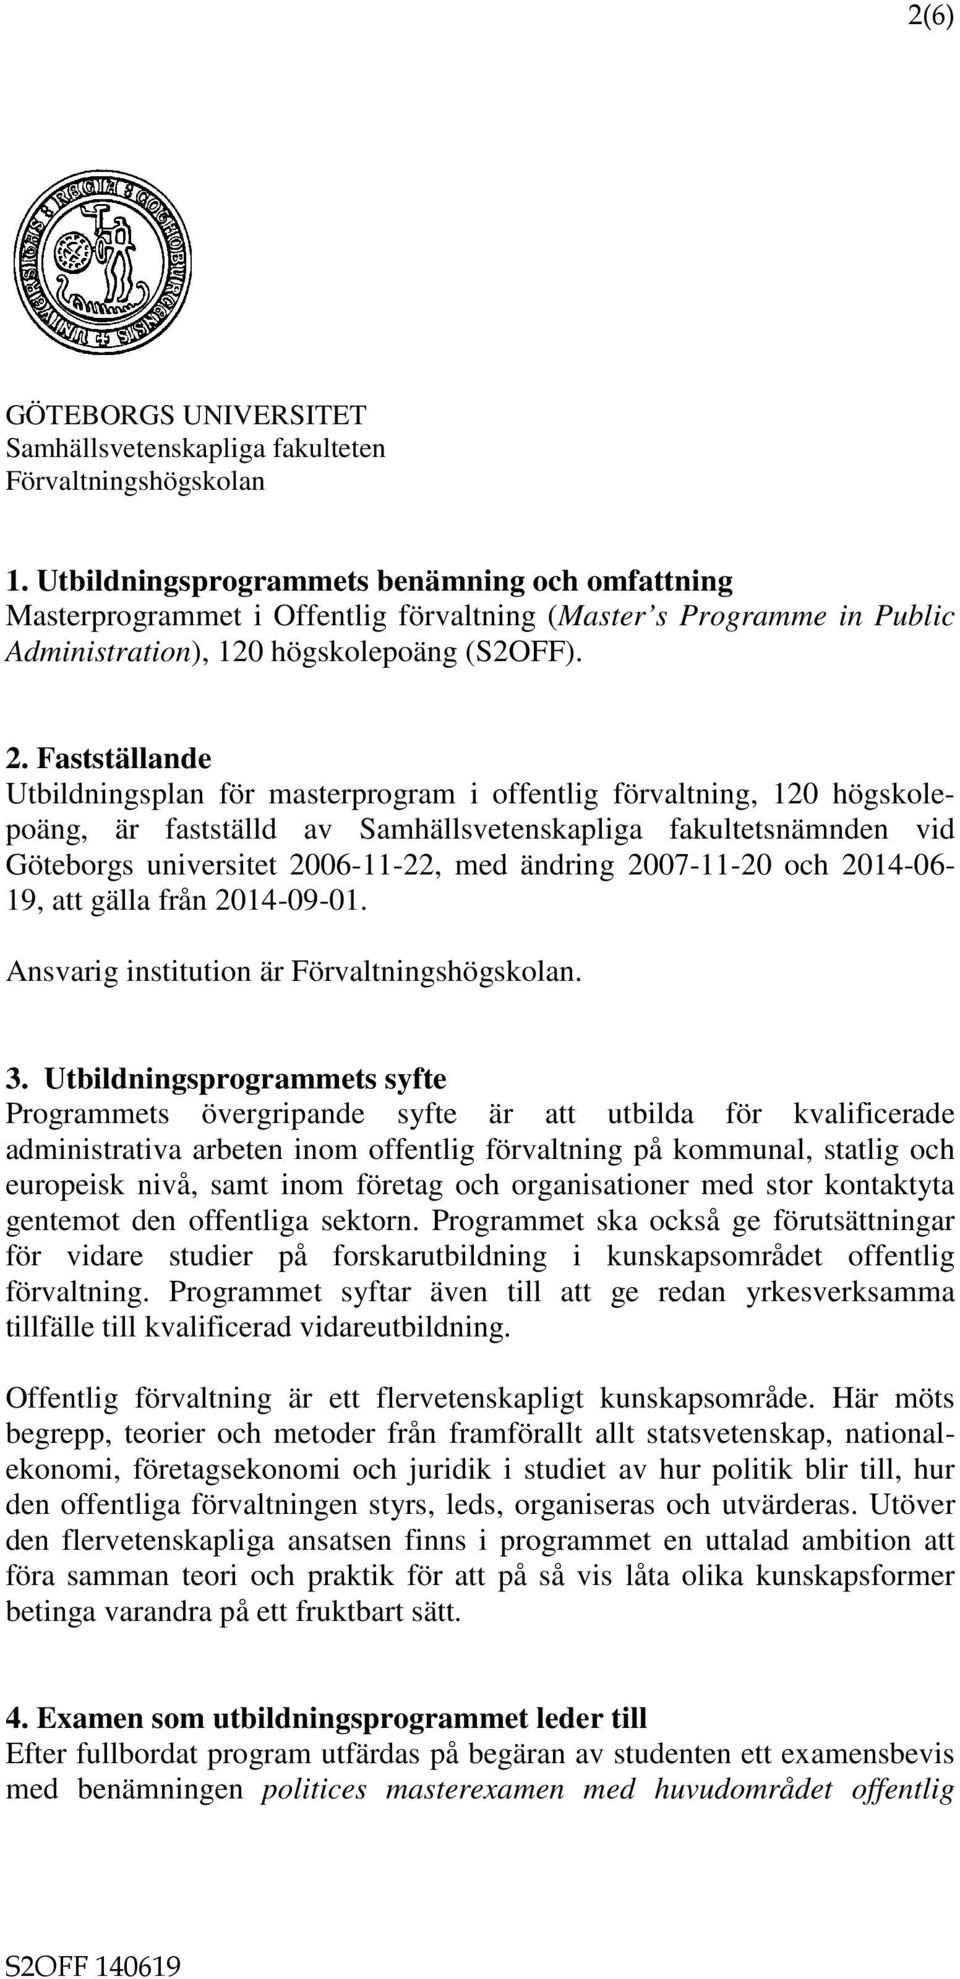 Fastställande Utbildningsplan för masterprogram i offentlig förvaltning, 120 högskolepoäng, är fastställd av Samhällsvetenskapliga fakultetsnämnden vid Göteborgs universitet 2006-11-22, med ändring